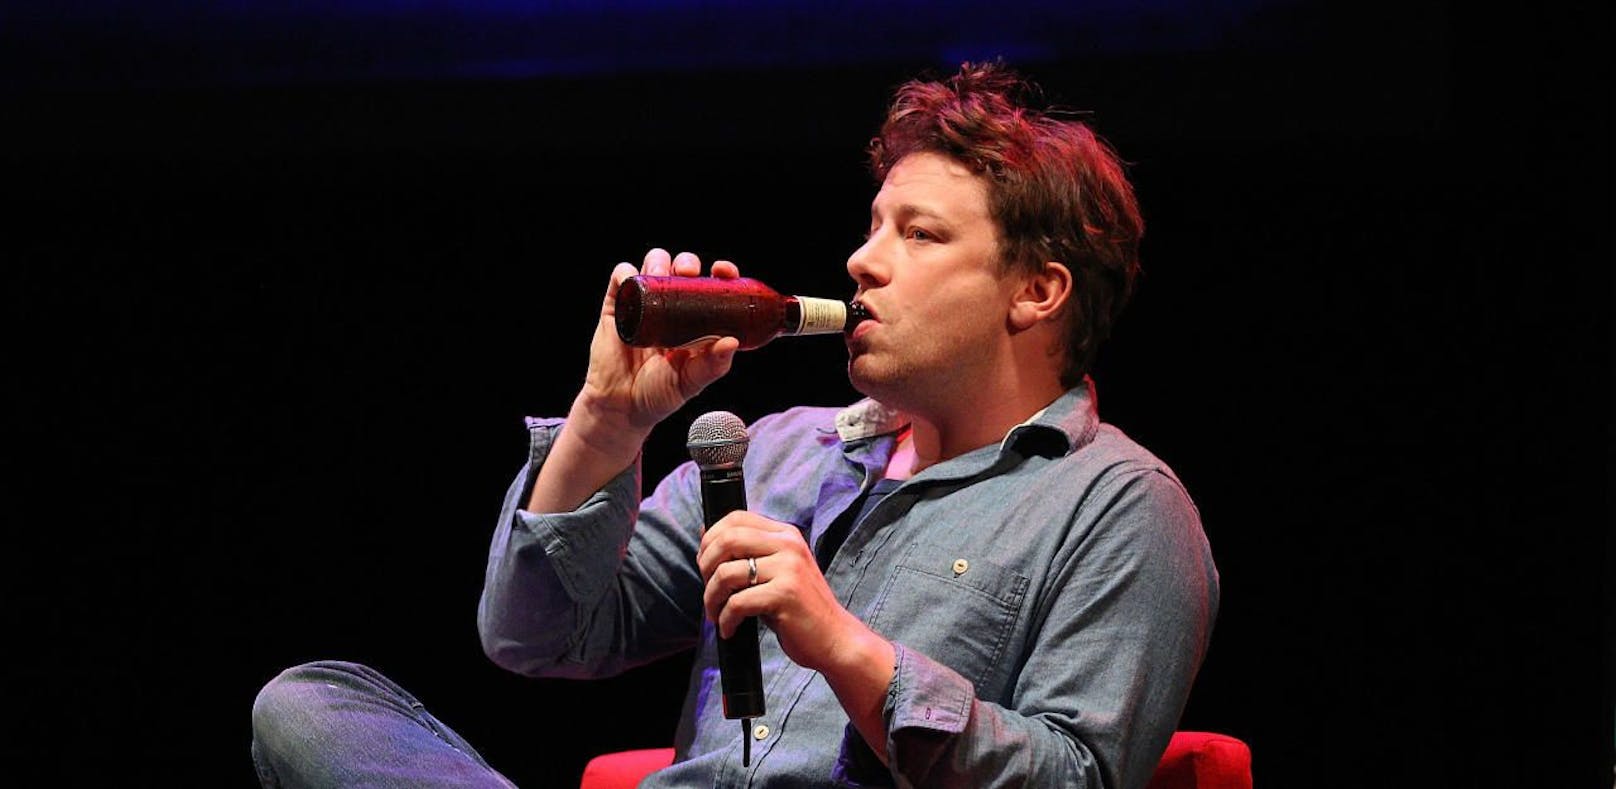 Jamie Olivers Lokale pleite – 1.300 Jobs gefährdet